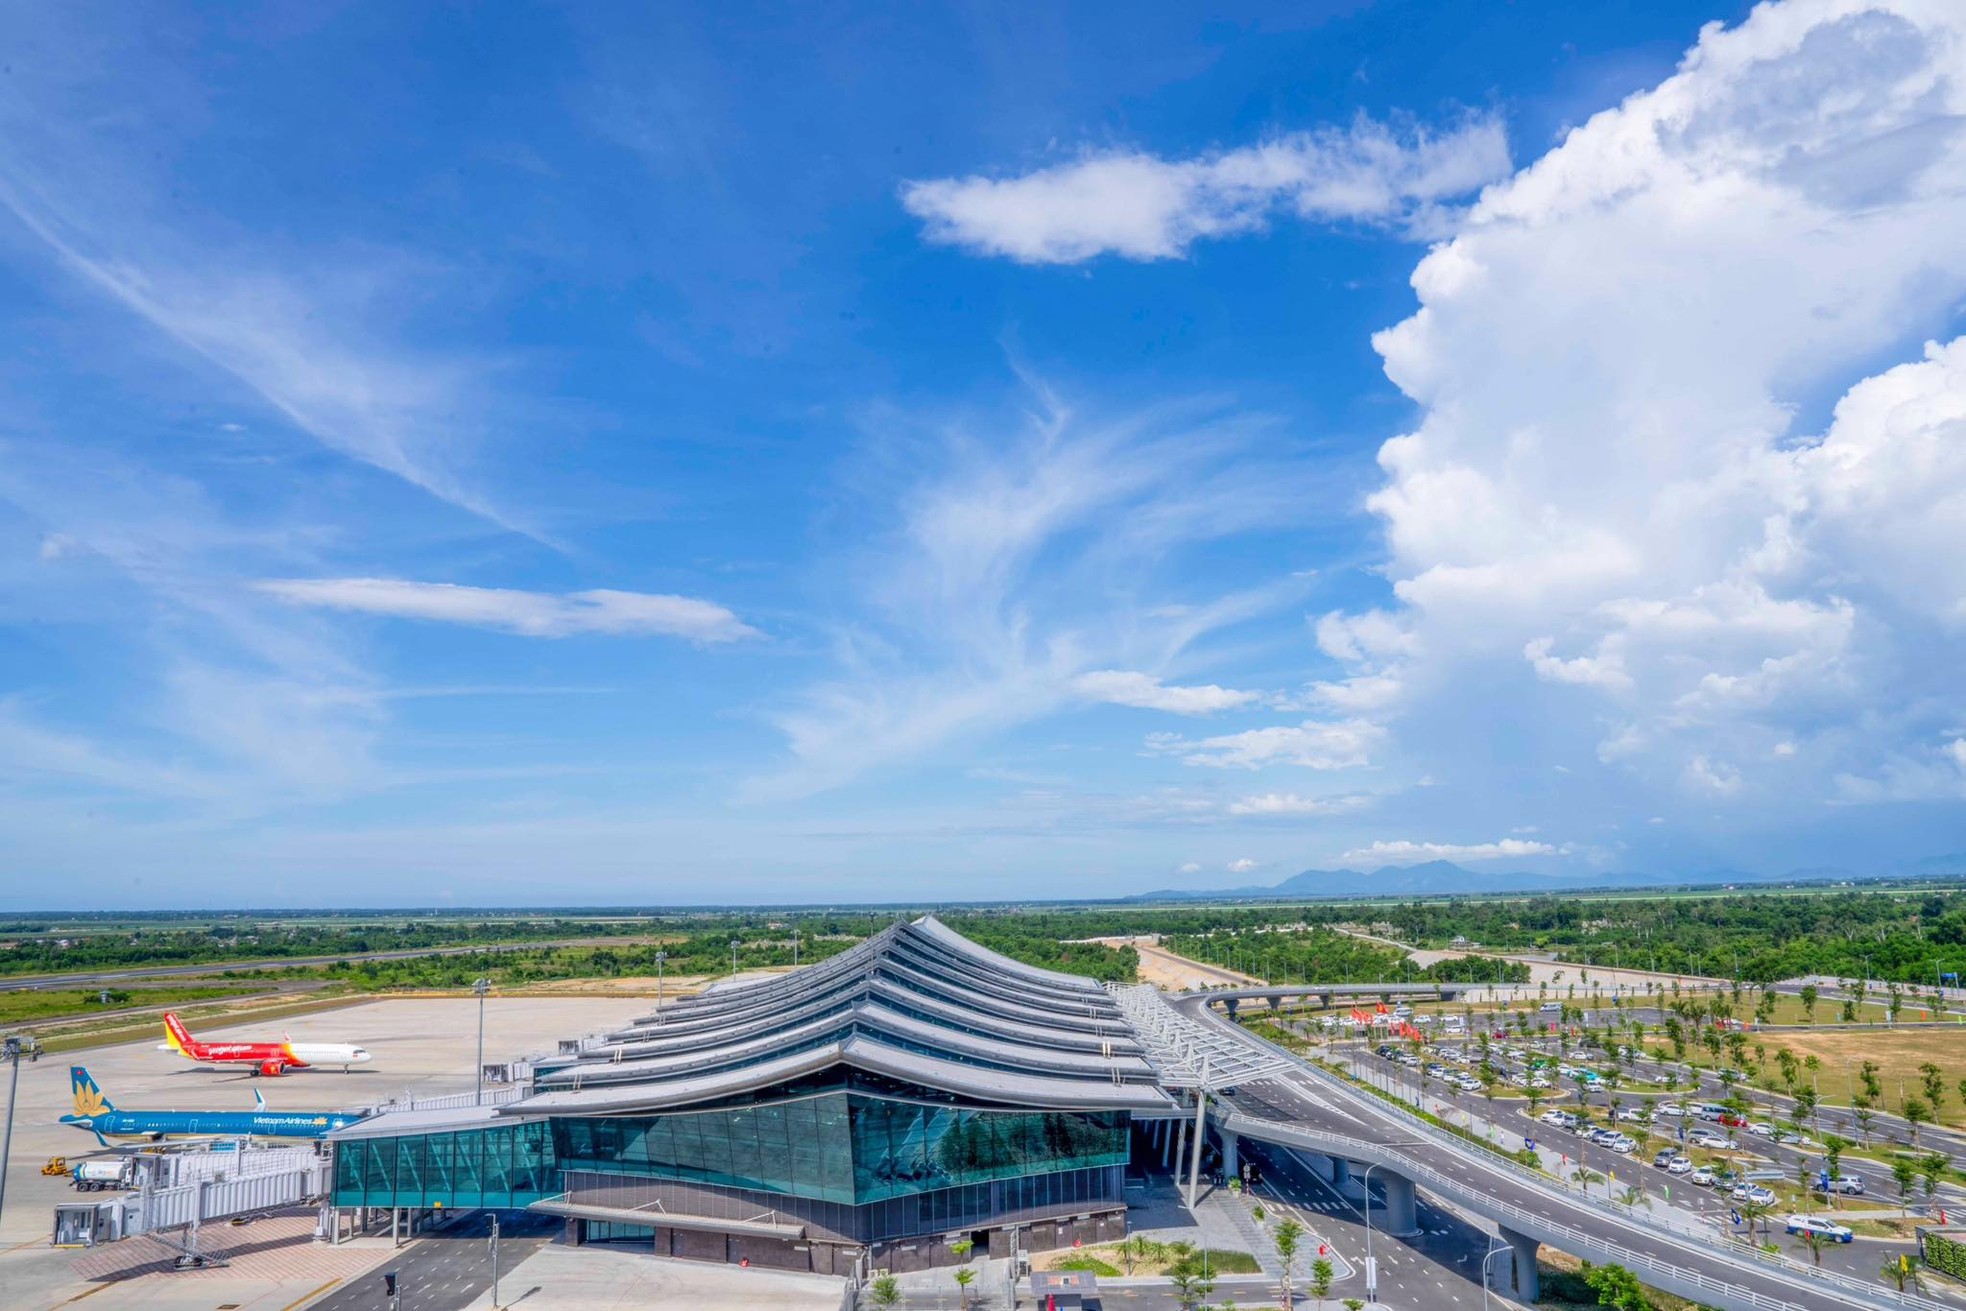 Ấn tượng hình ảnh kiến trúc sân bay 'độc nhất vô nhị' ở Việt Nam - Ảnh 2.